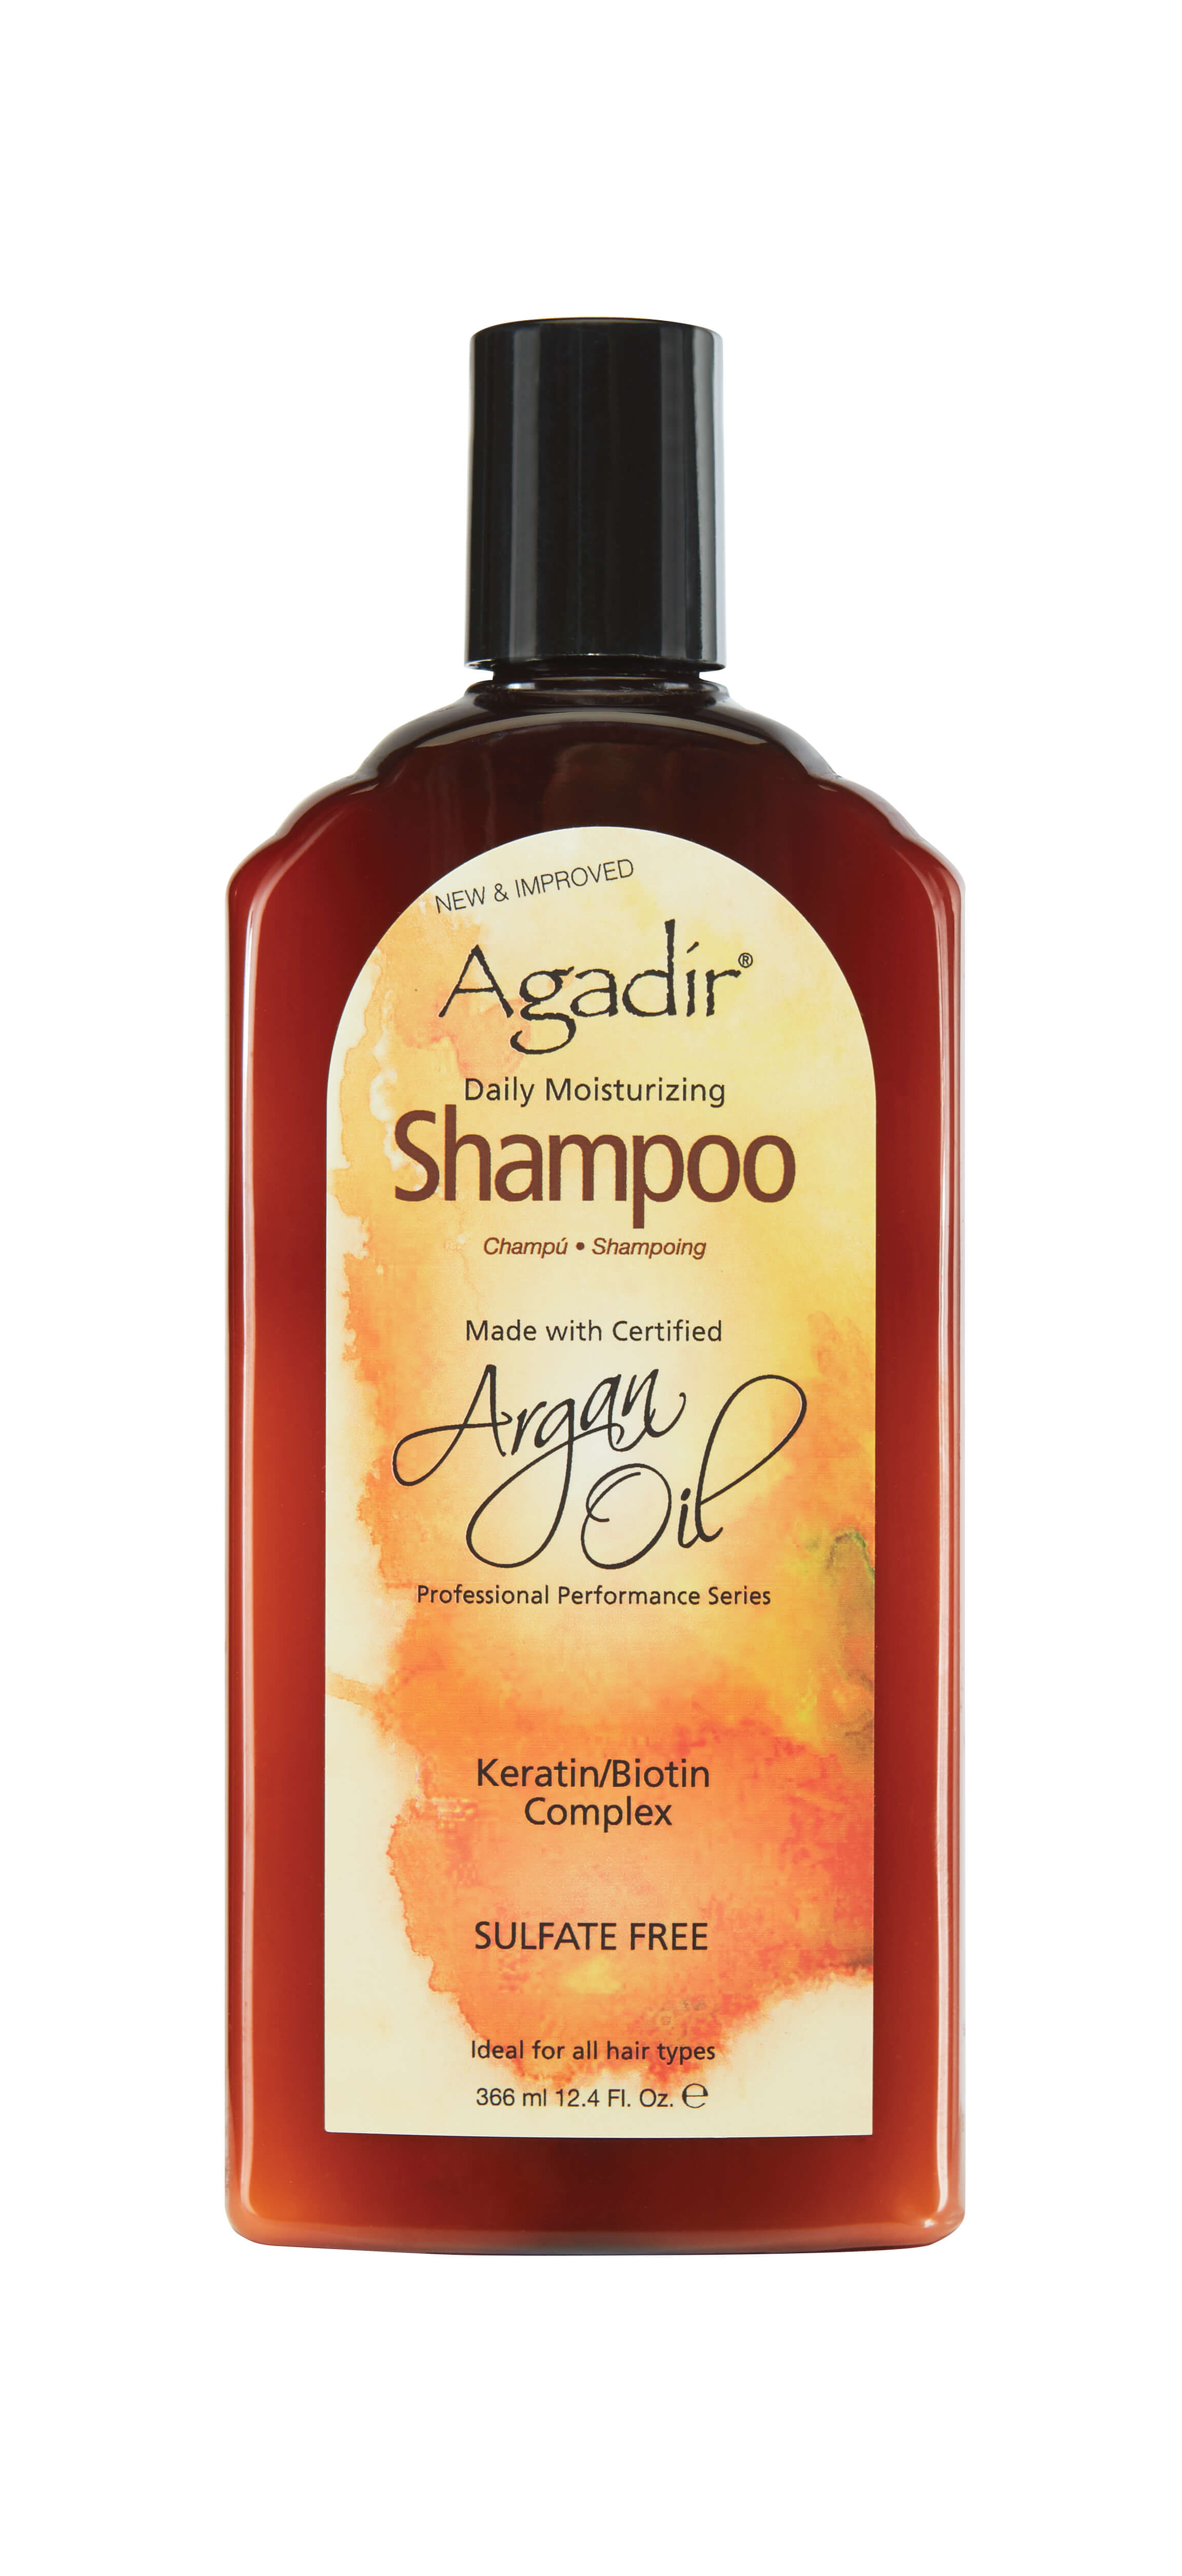 Увлажняющий шампунь Agadir Argan Oil Daily Moisturizing Shampoo 1000 ml